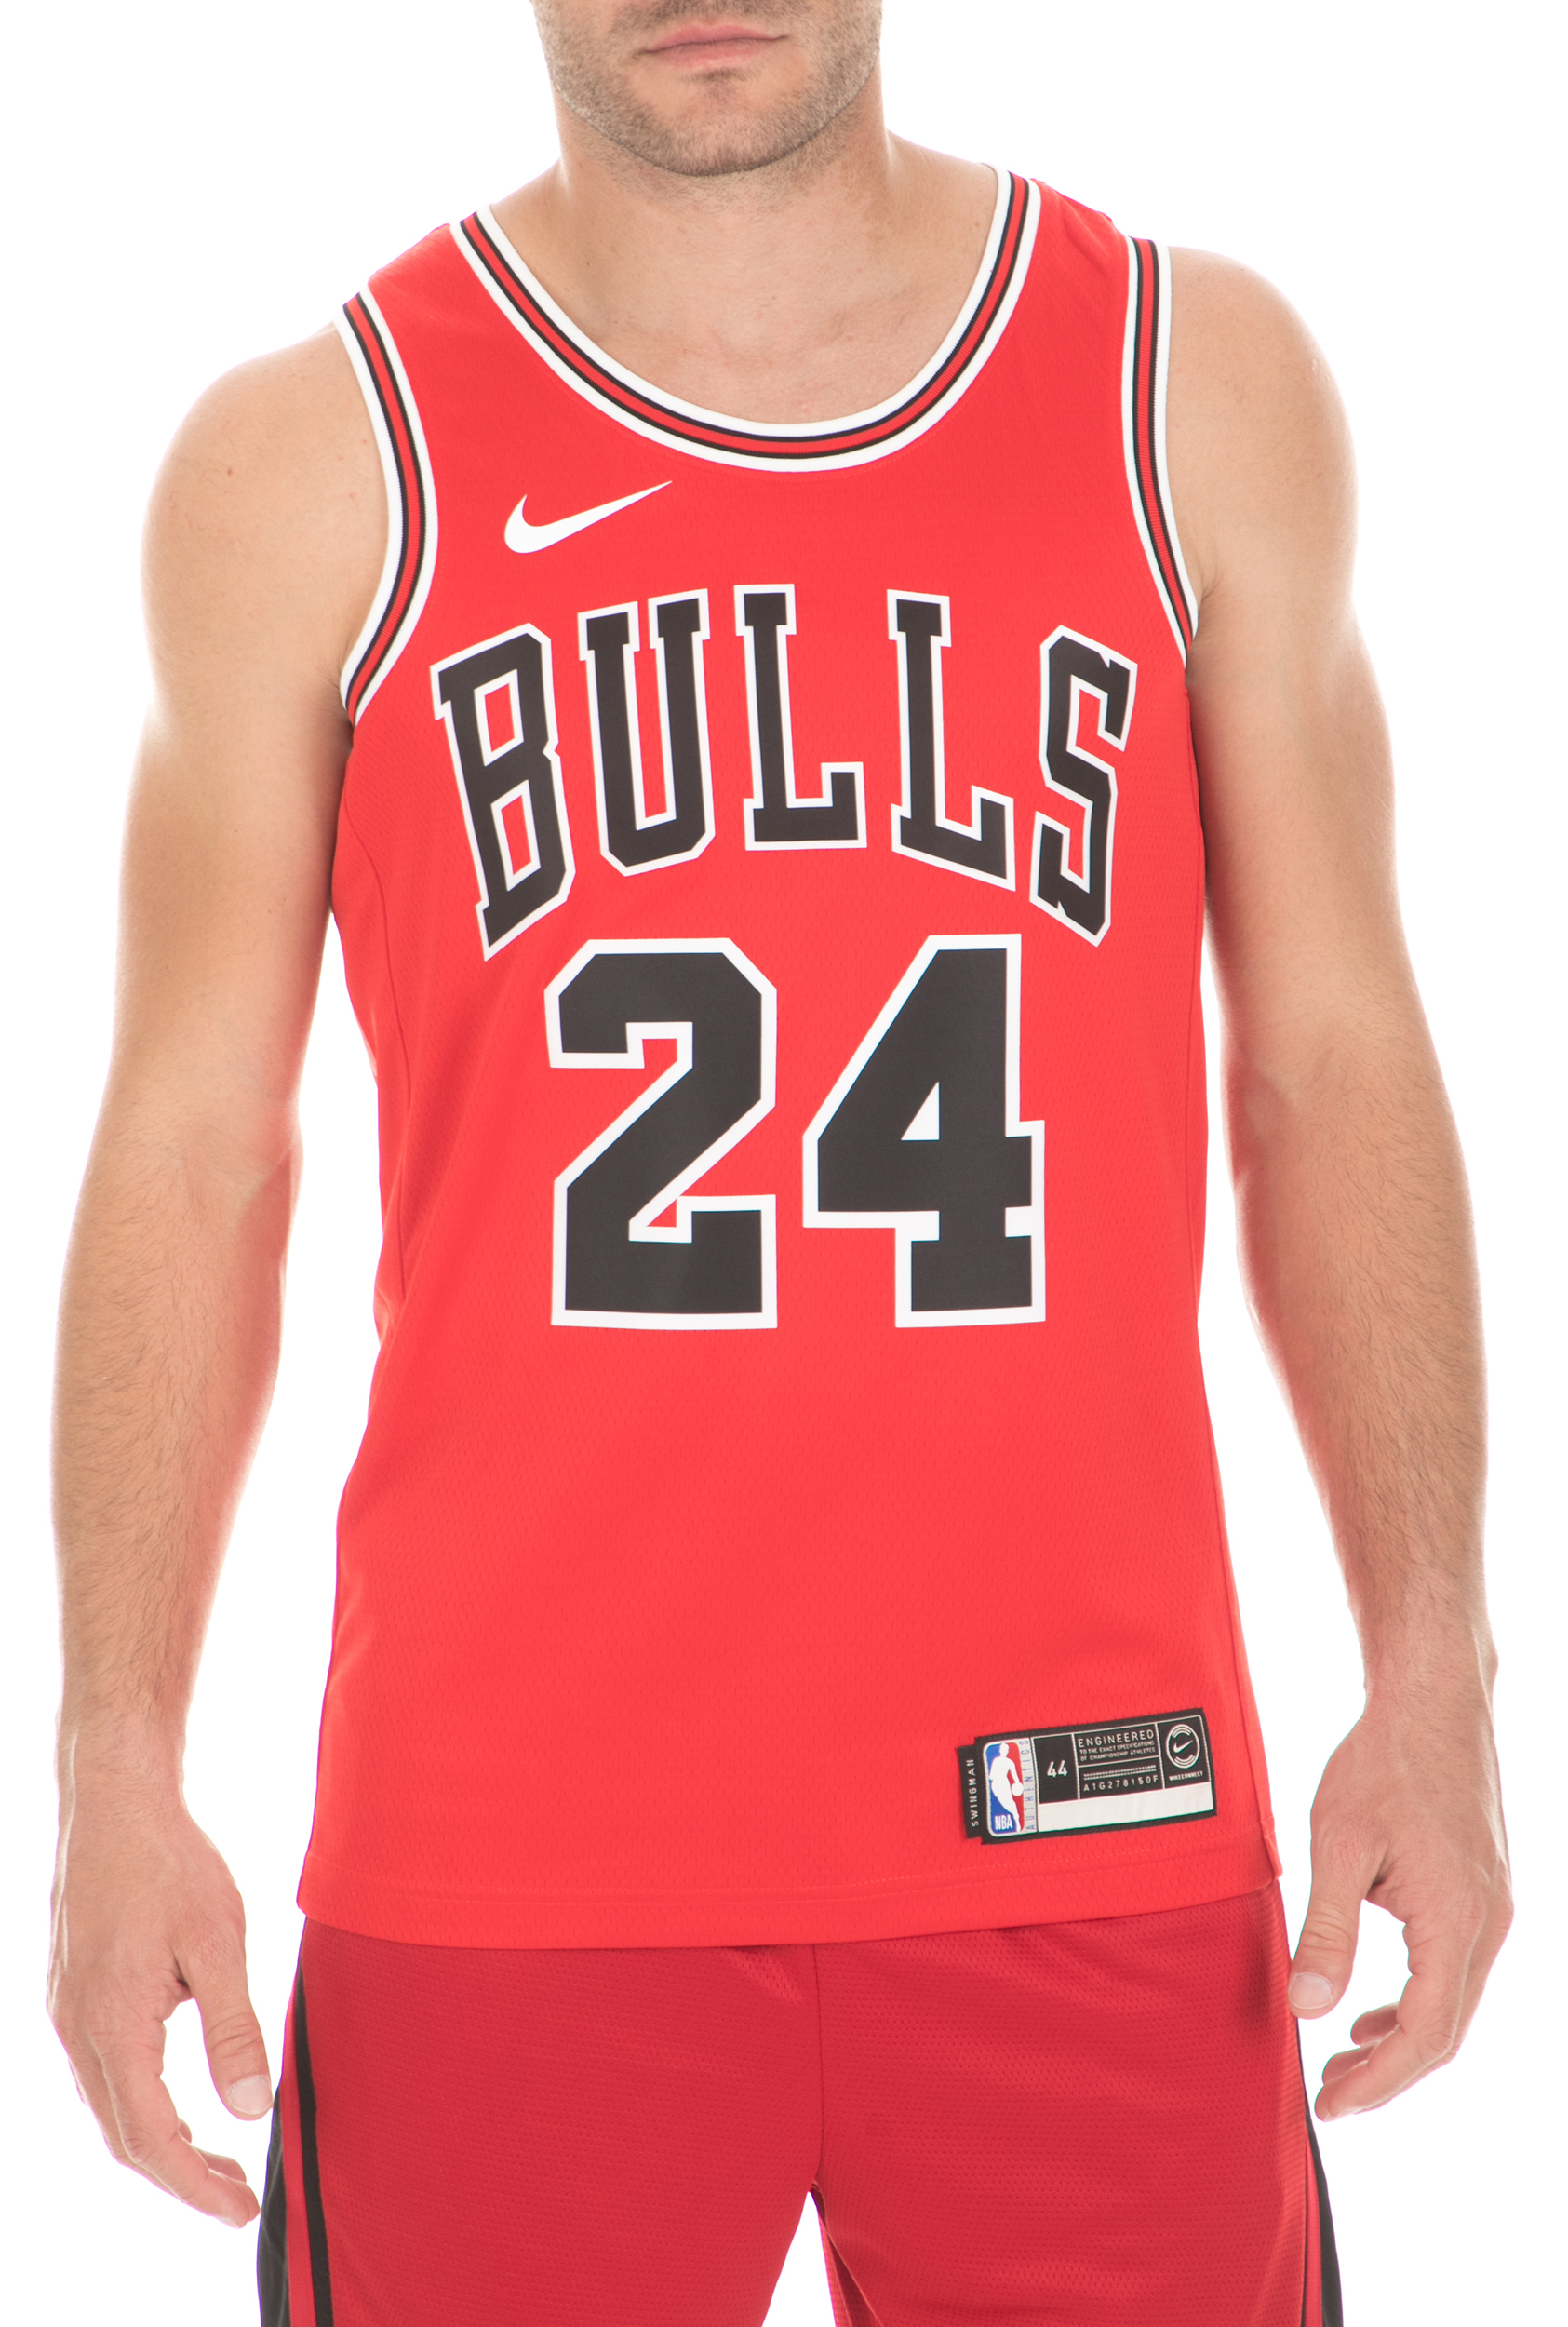 Ανδρικά/Ρούχα/Αθλητικά/T-shirt NIKE - Ανδρική φανέλα Nike NBA Icon Edition Swingman Chicago Bulls κόκκινη